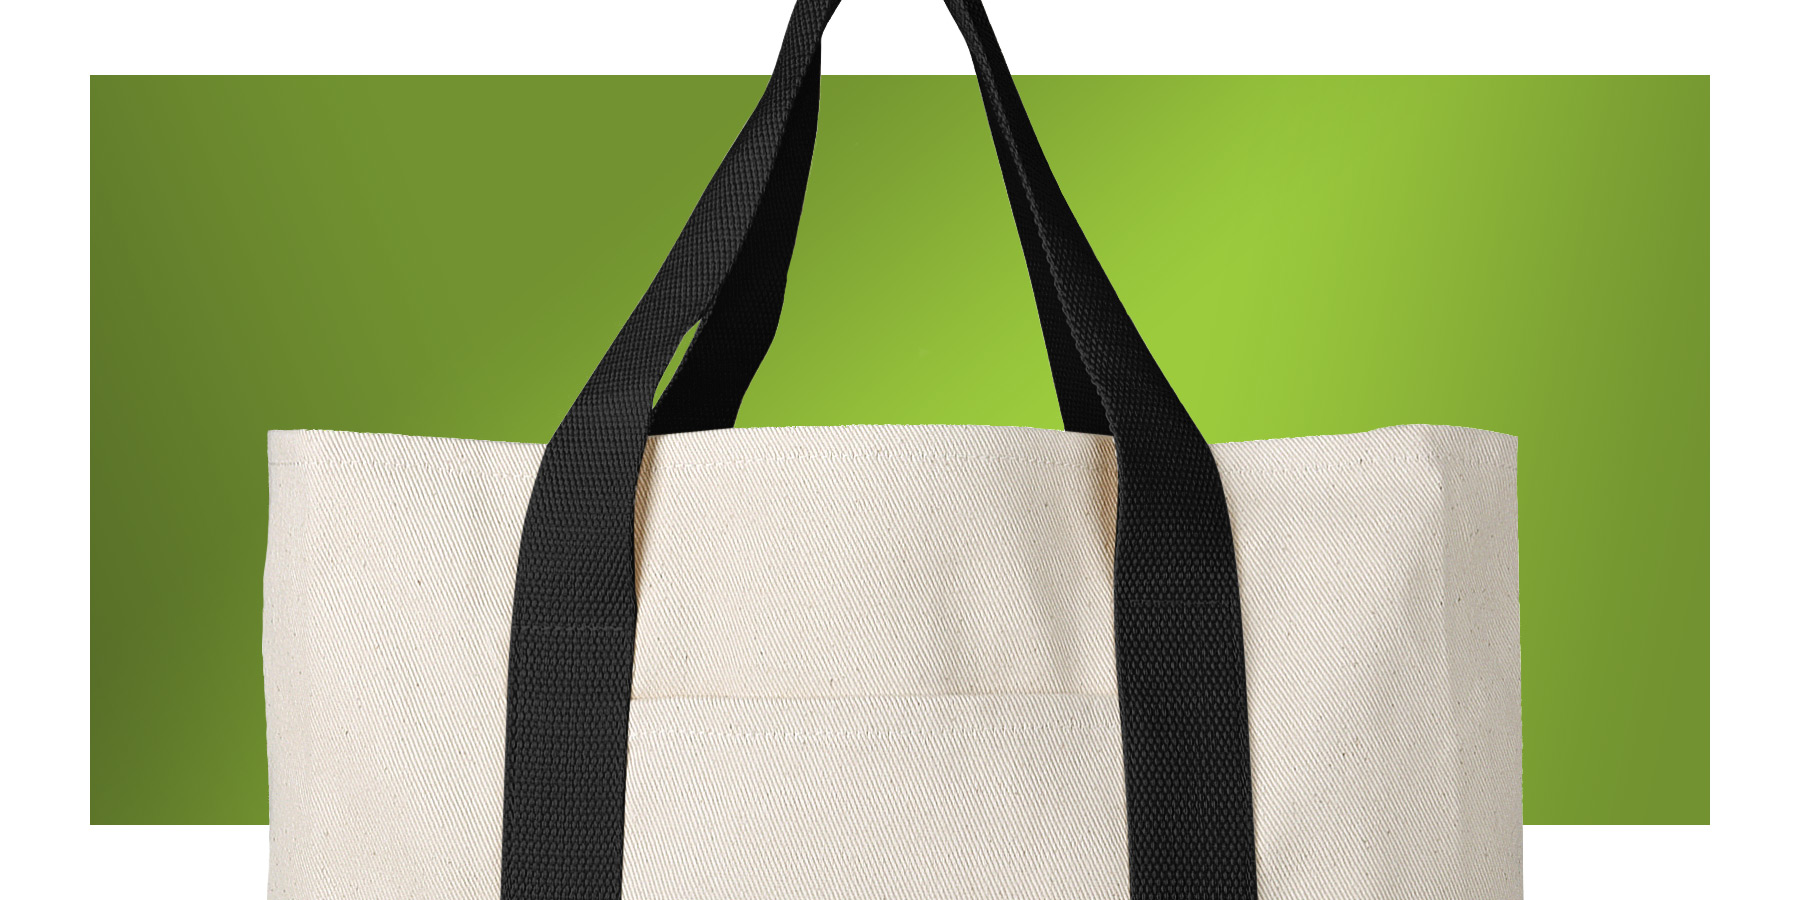 Michael Kors Handbags Wholesale | 100% Authentic Accessories